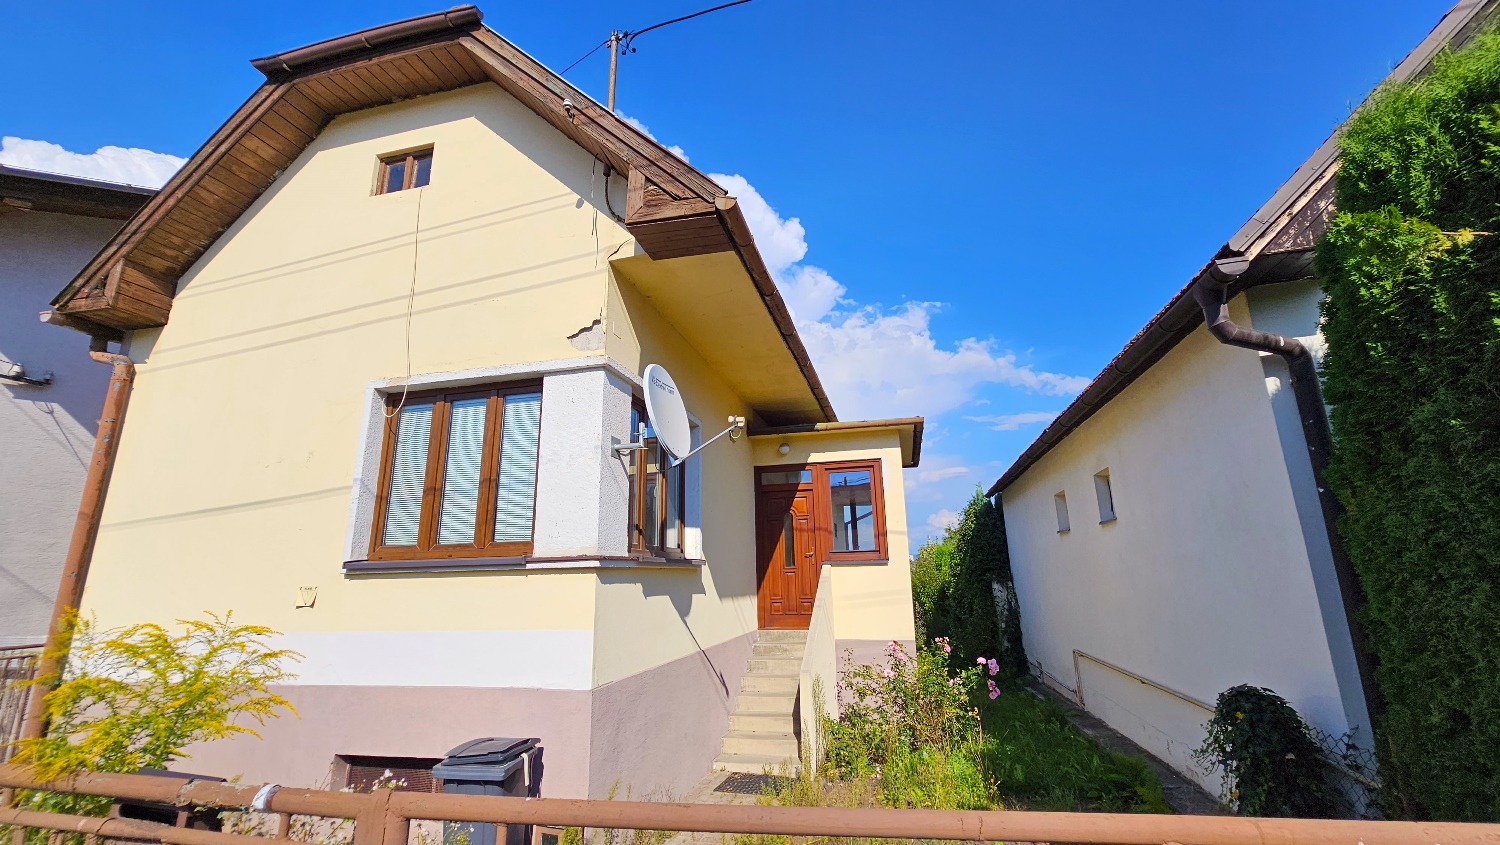 Romantický 3-izbový rodinný dom, výborná lokalita, veľký potenciál, predaj, Žilina - Závodie, Cena: 220.000 €